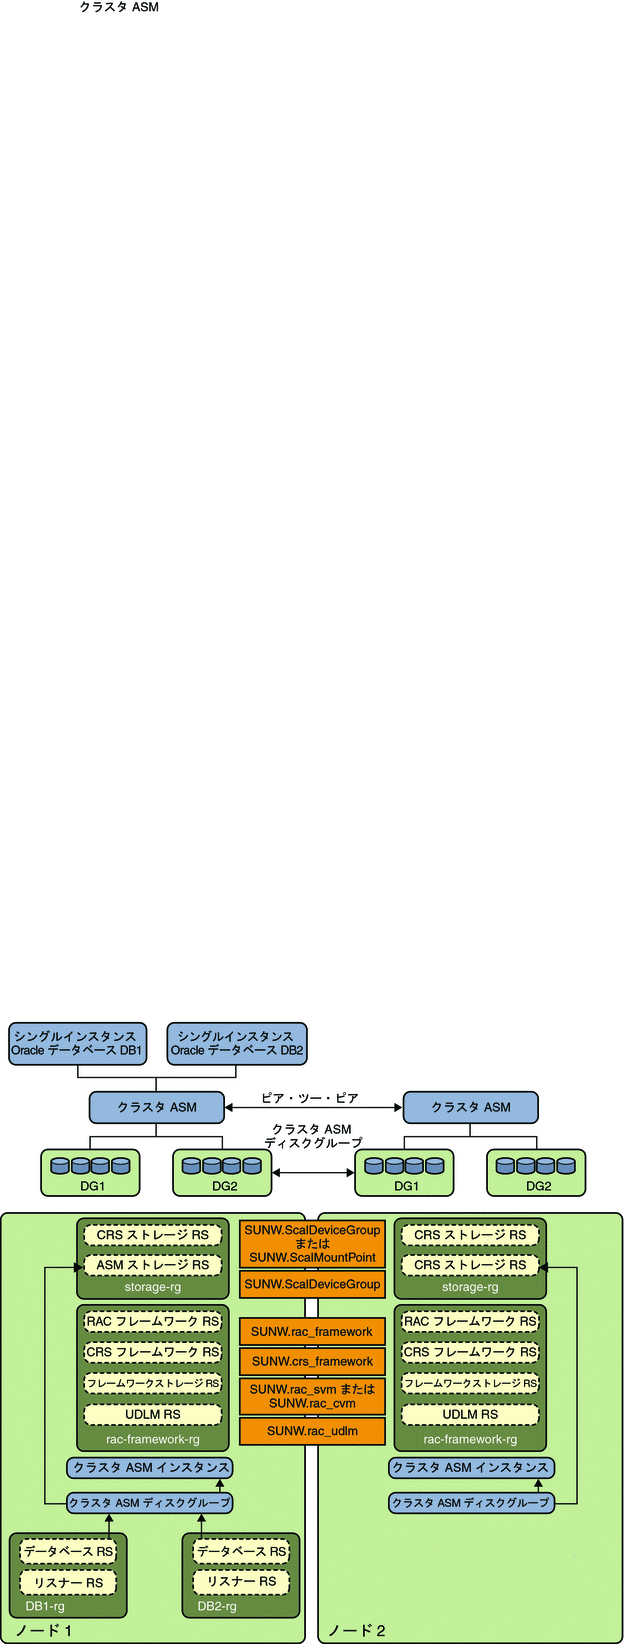 クラスタディスクグループ 1 を持つクラスタ ASM を示す図